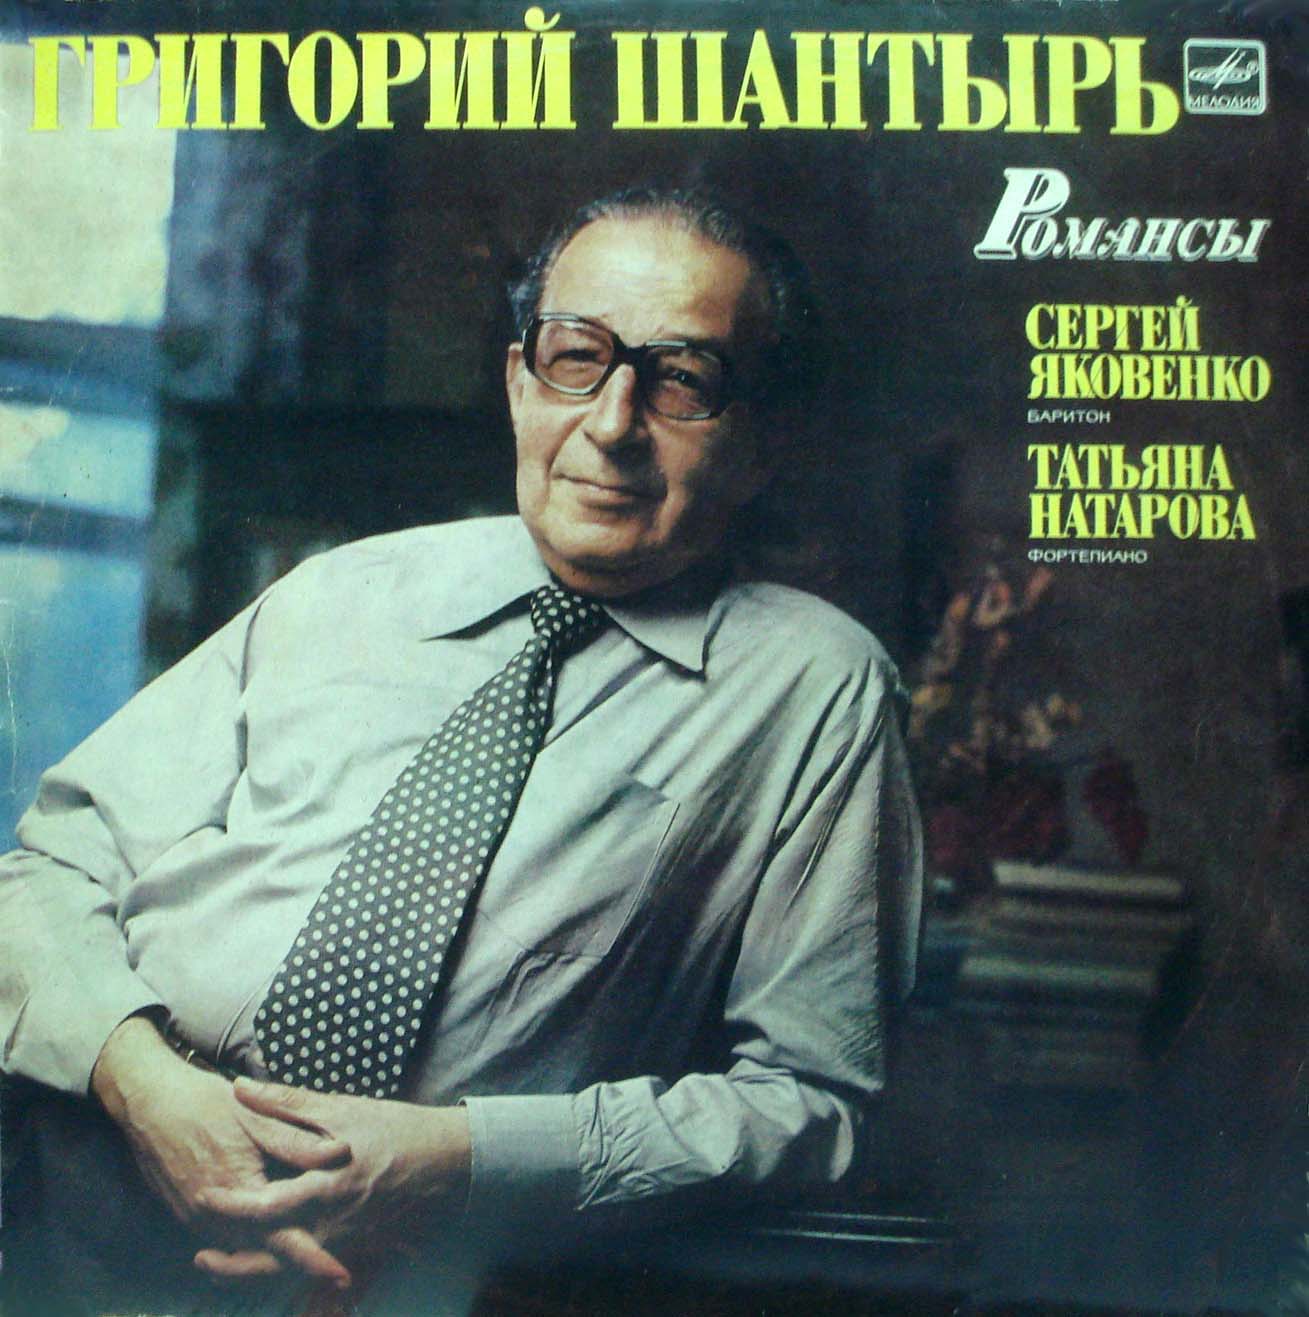 Г. ШАНТЫРЬ (1923–1987) «Романсы» — С. Яковенко